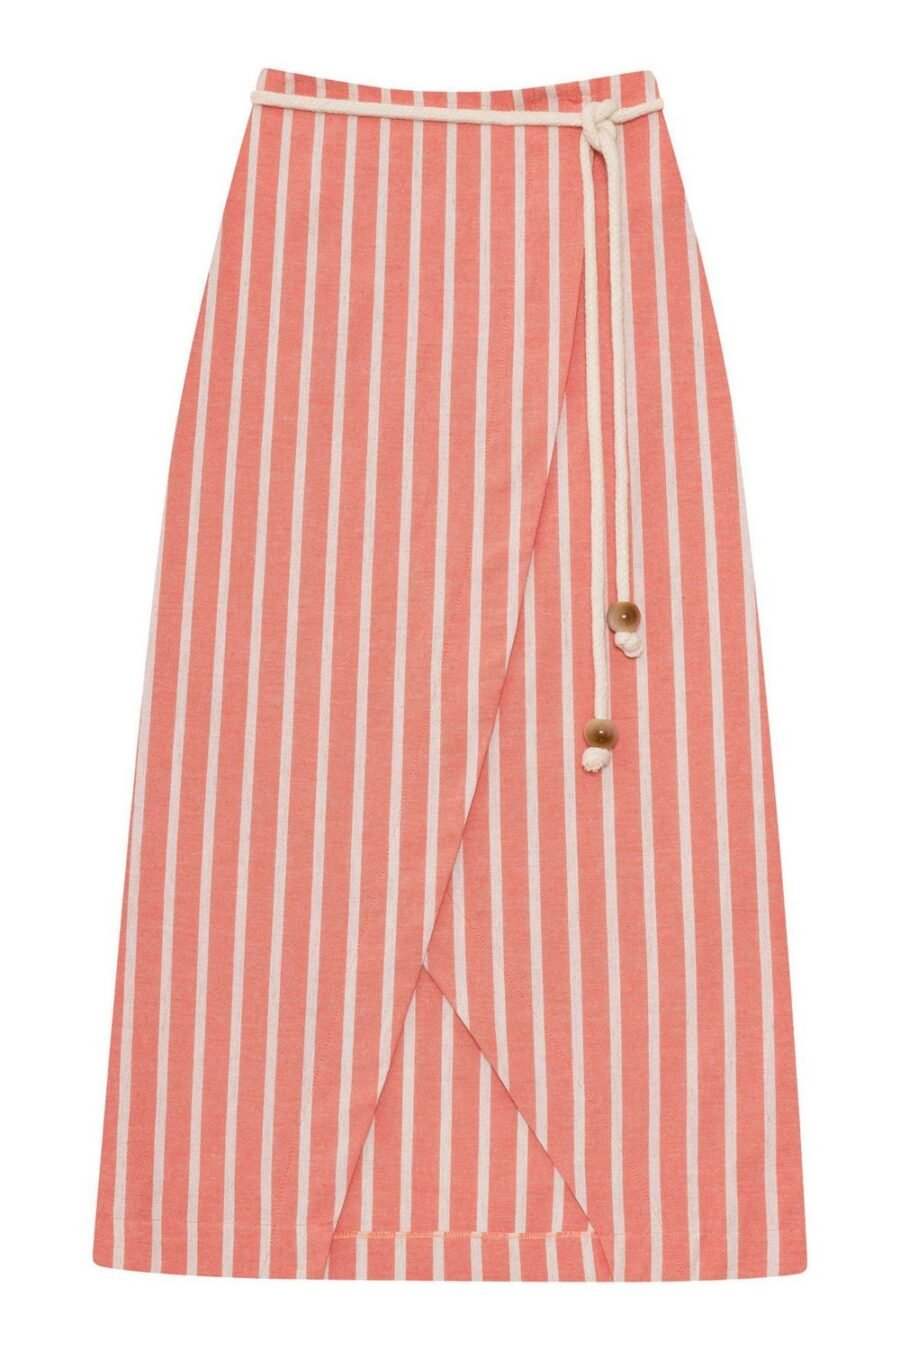 "Heartfelt Stripes" Midi Skirt by Lez a Lez